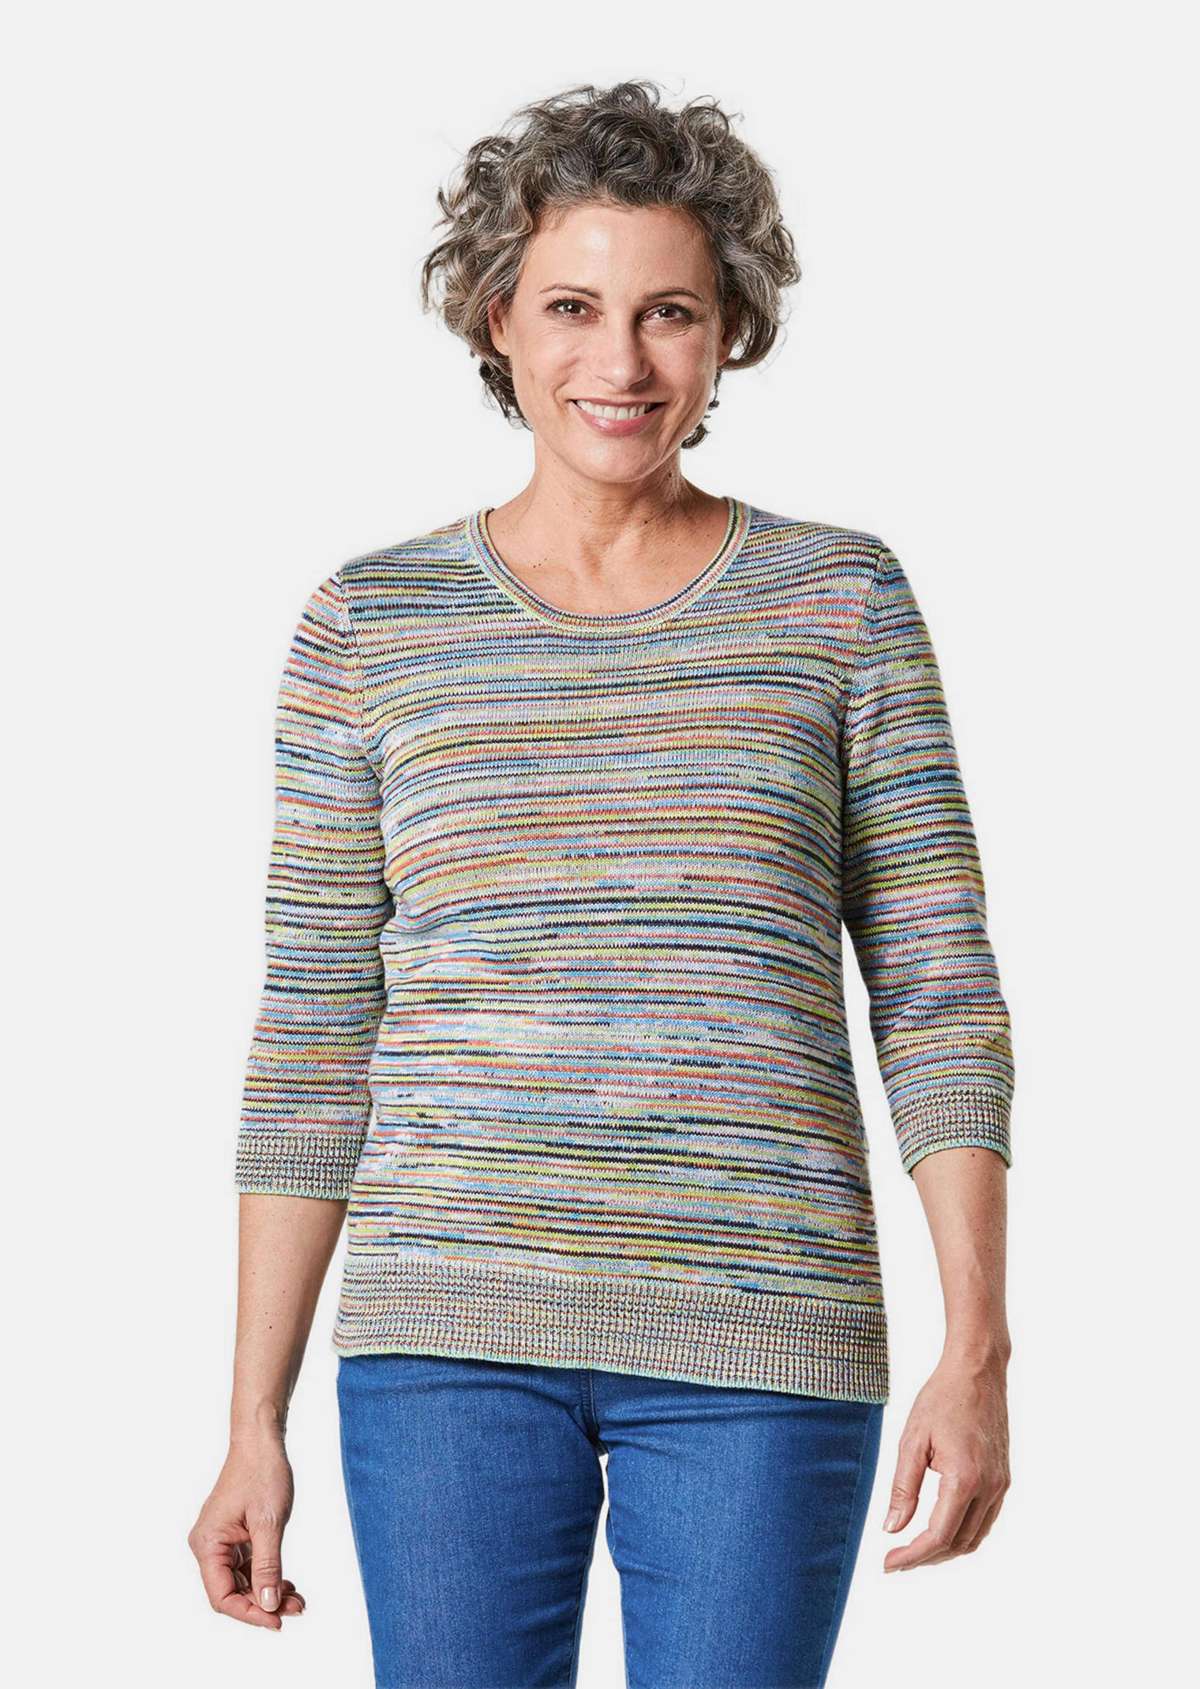 Комбинированный свитер в разноцветную полоску.